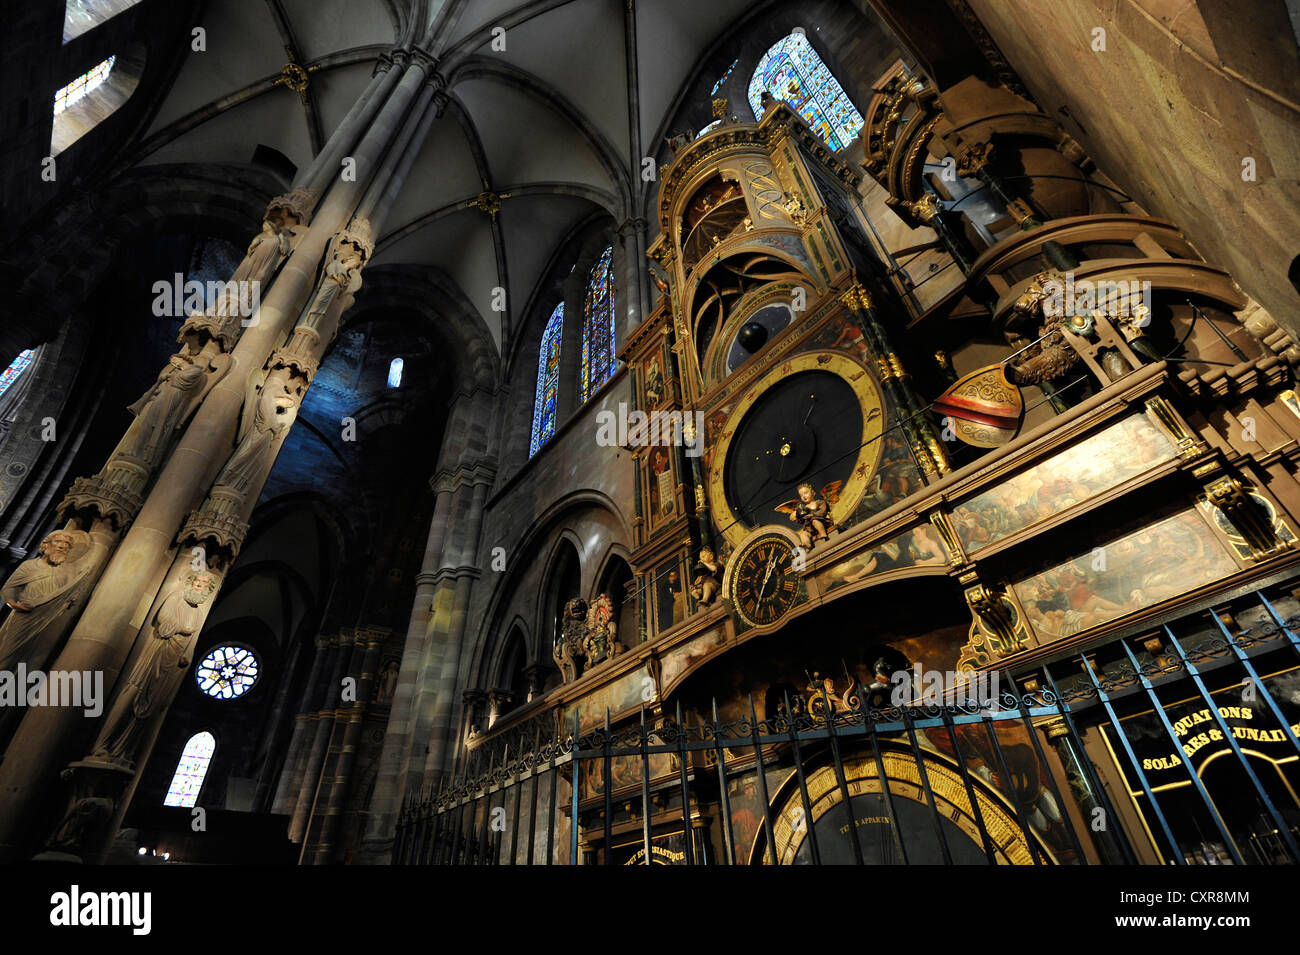 Horloge astronomique, vue de l'intérieur de la cathédrale de Strasbourg, la cathédrale de Notre Dame de Strasbourg, Strasbourg, Bas-Rhin Banque D'Images